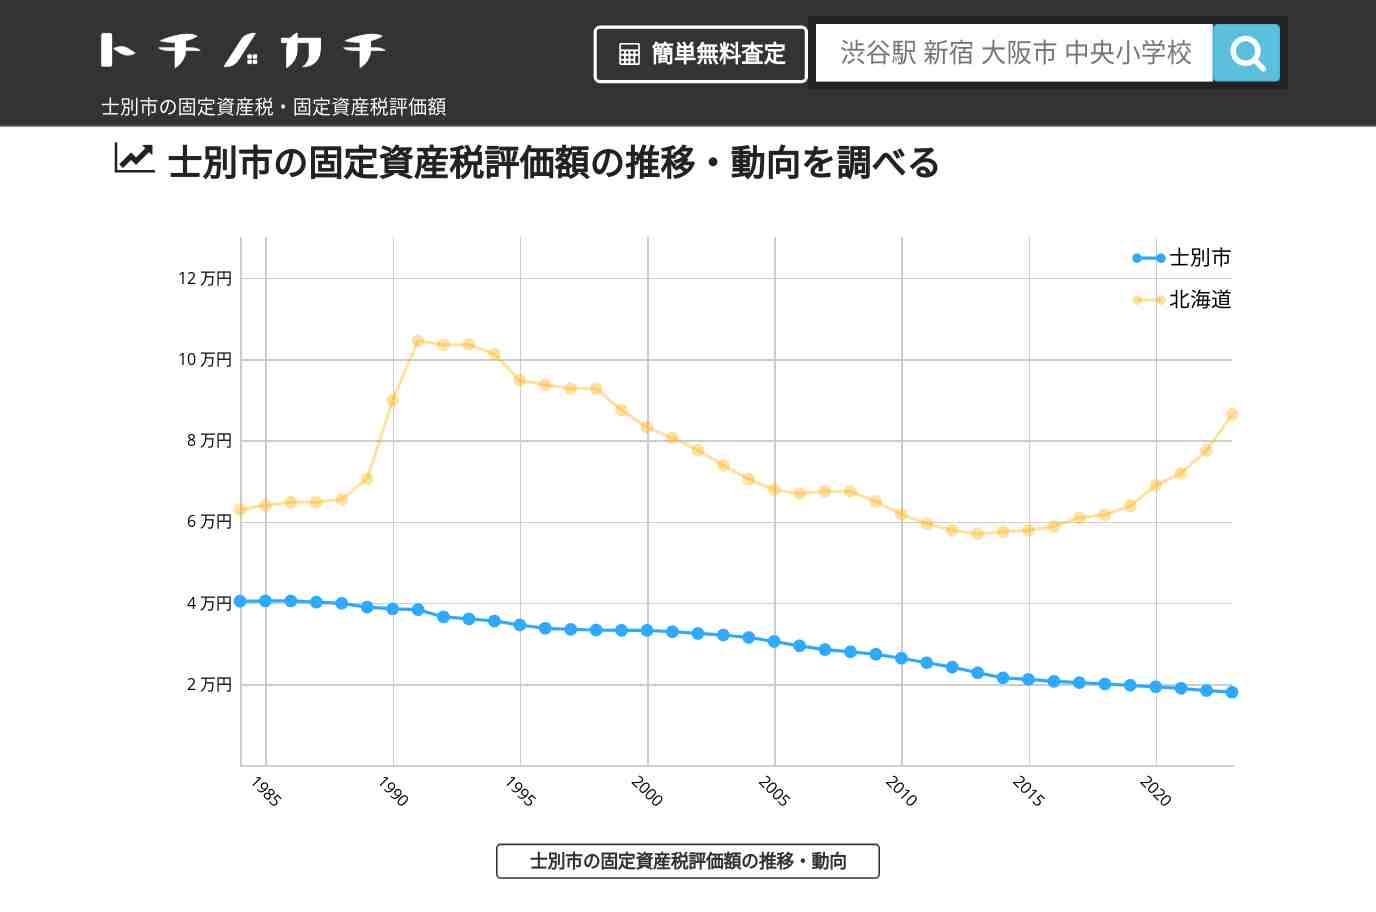 糸魚小学校(北海道 士別市)周辺の固定資産税・固定資産税評価額 | トチノカチ